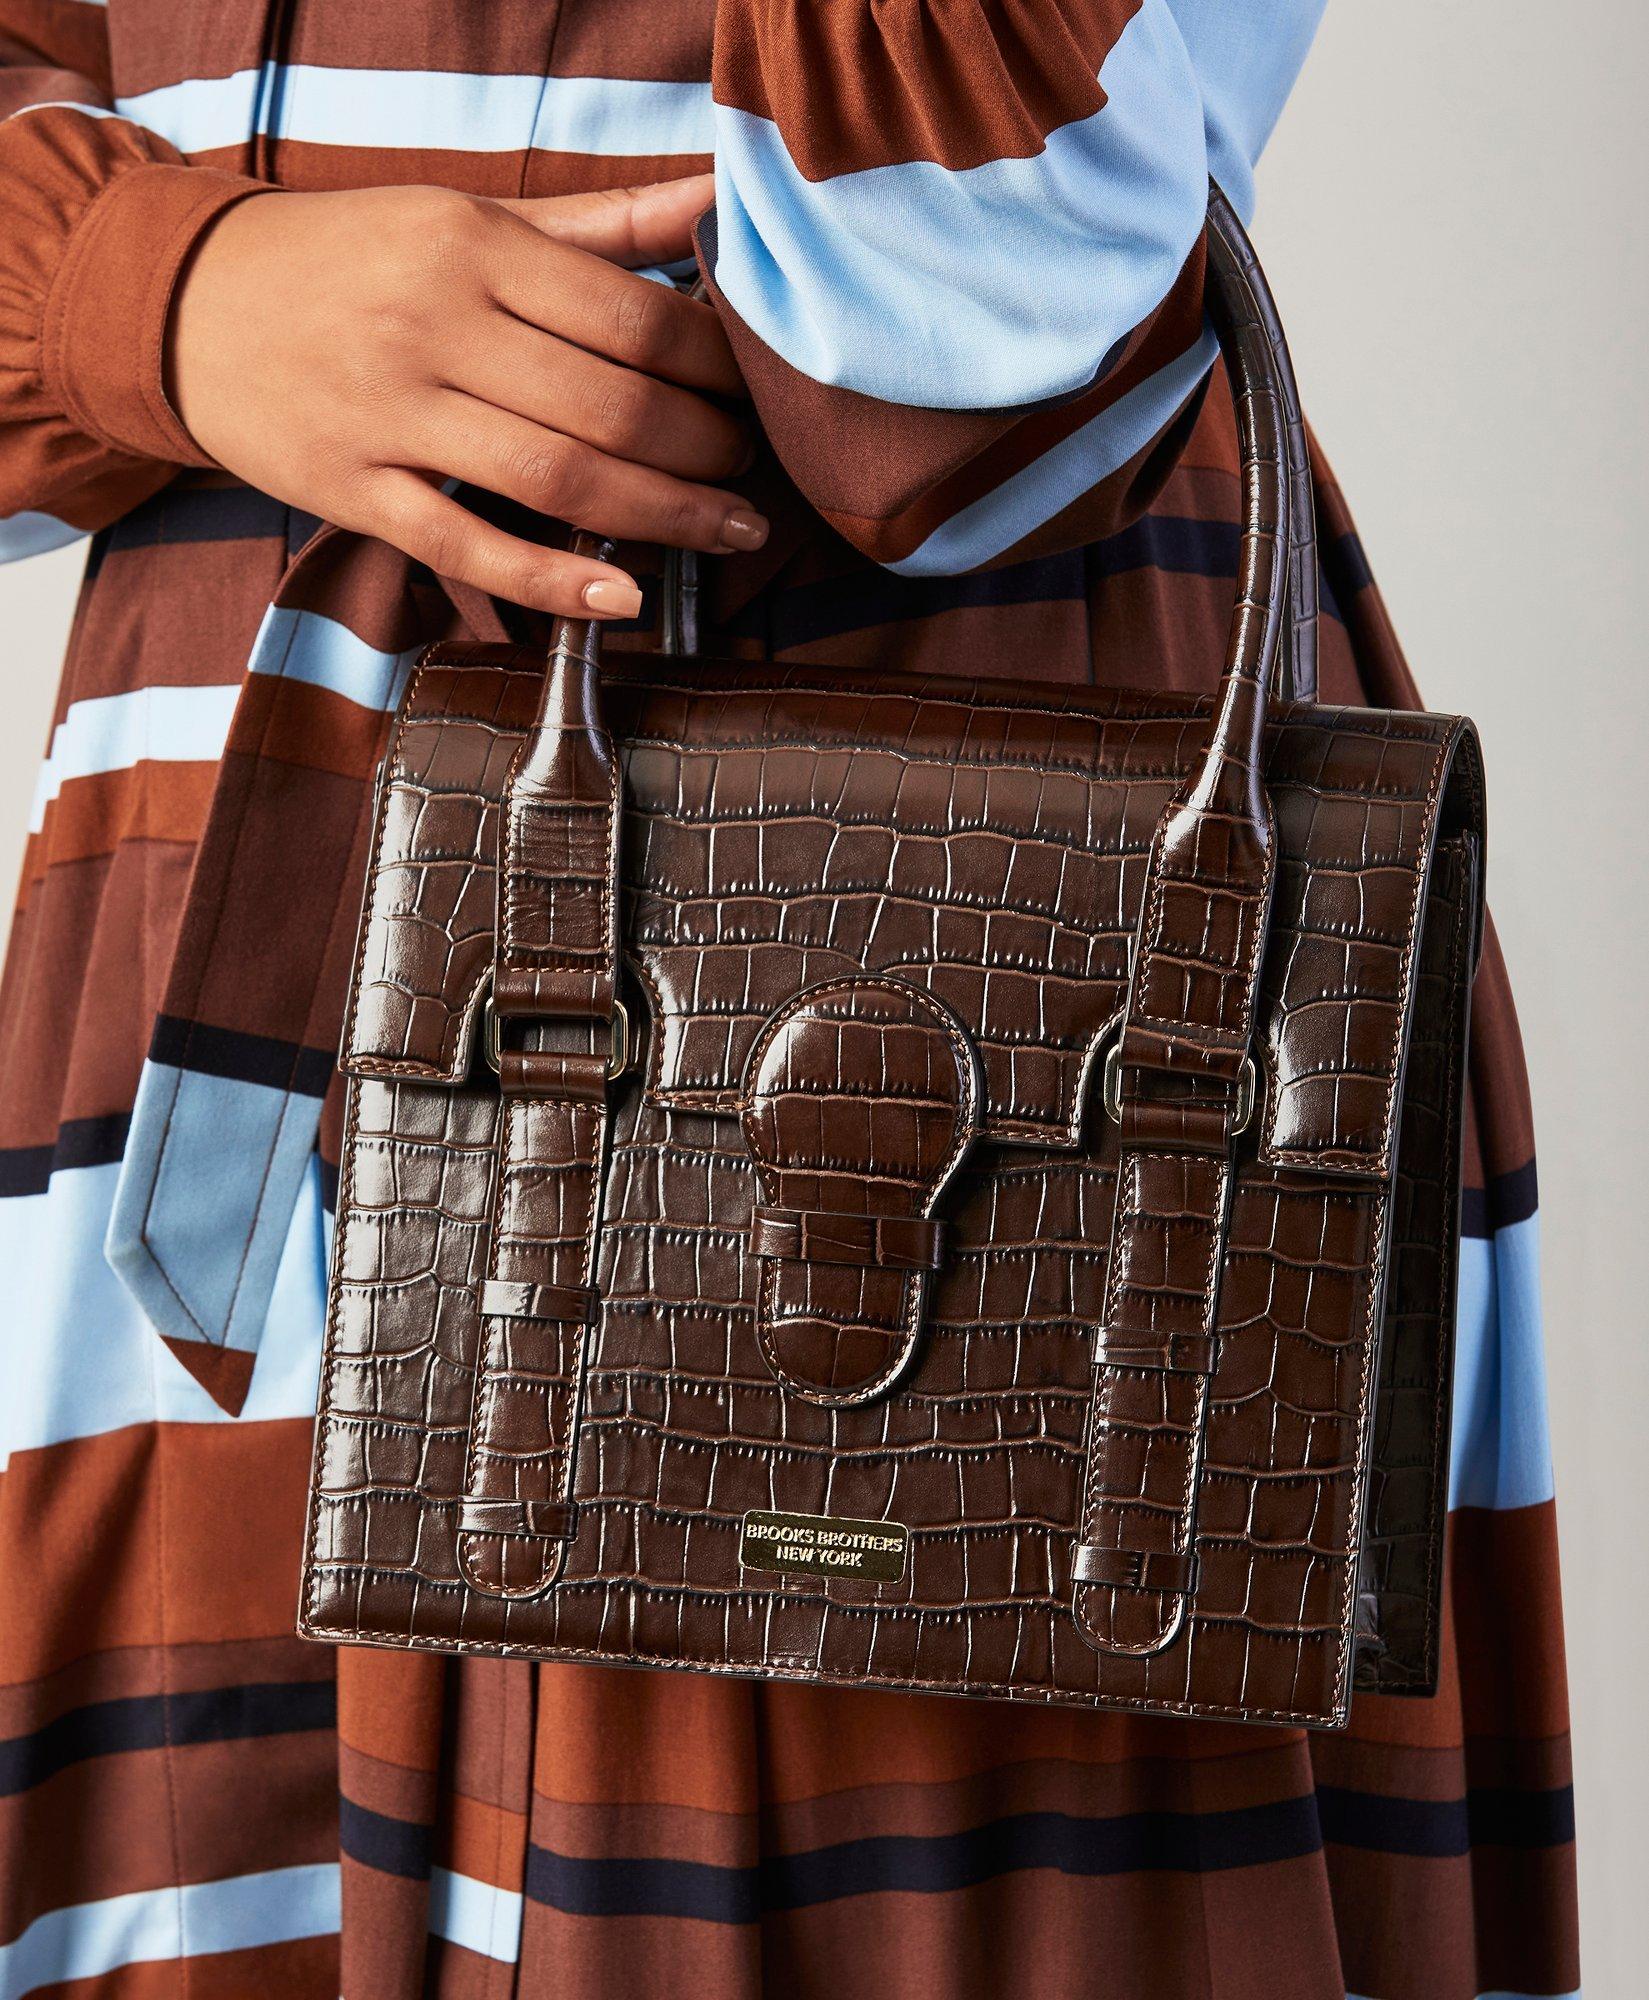 Crocodile-Embossed Leather Handbag